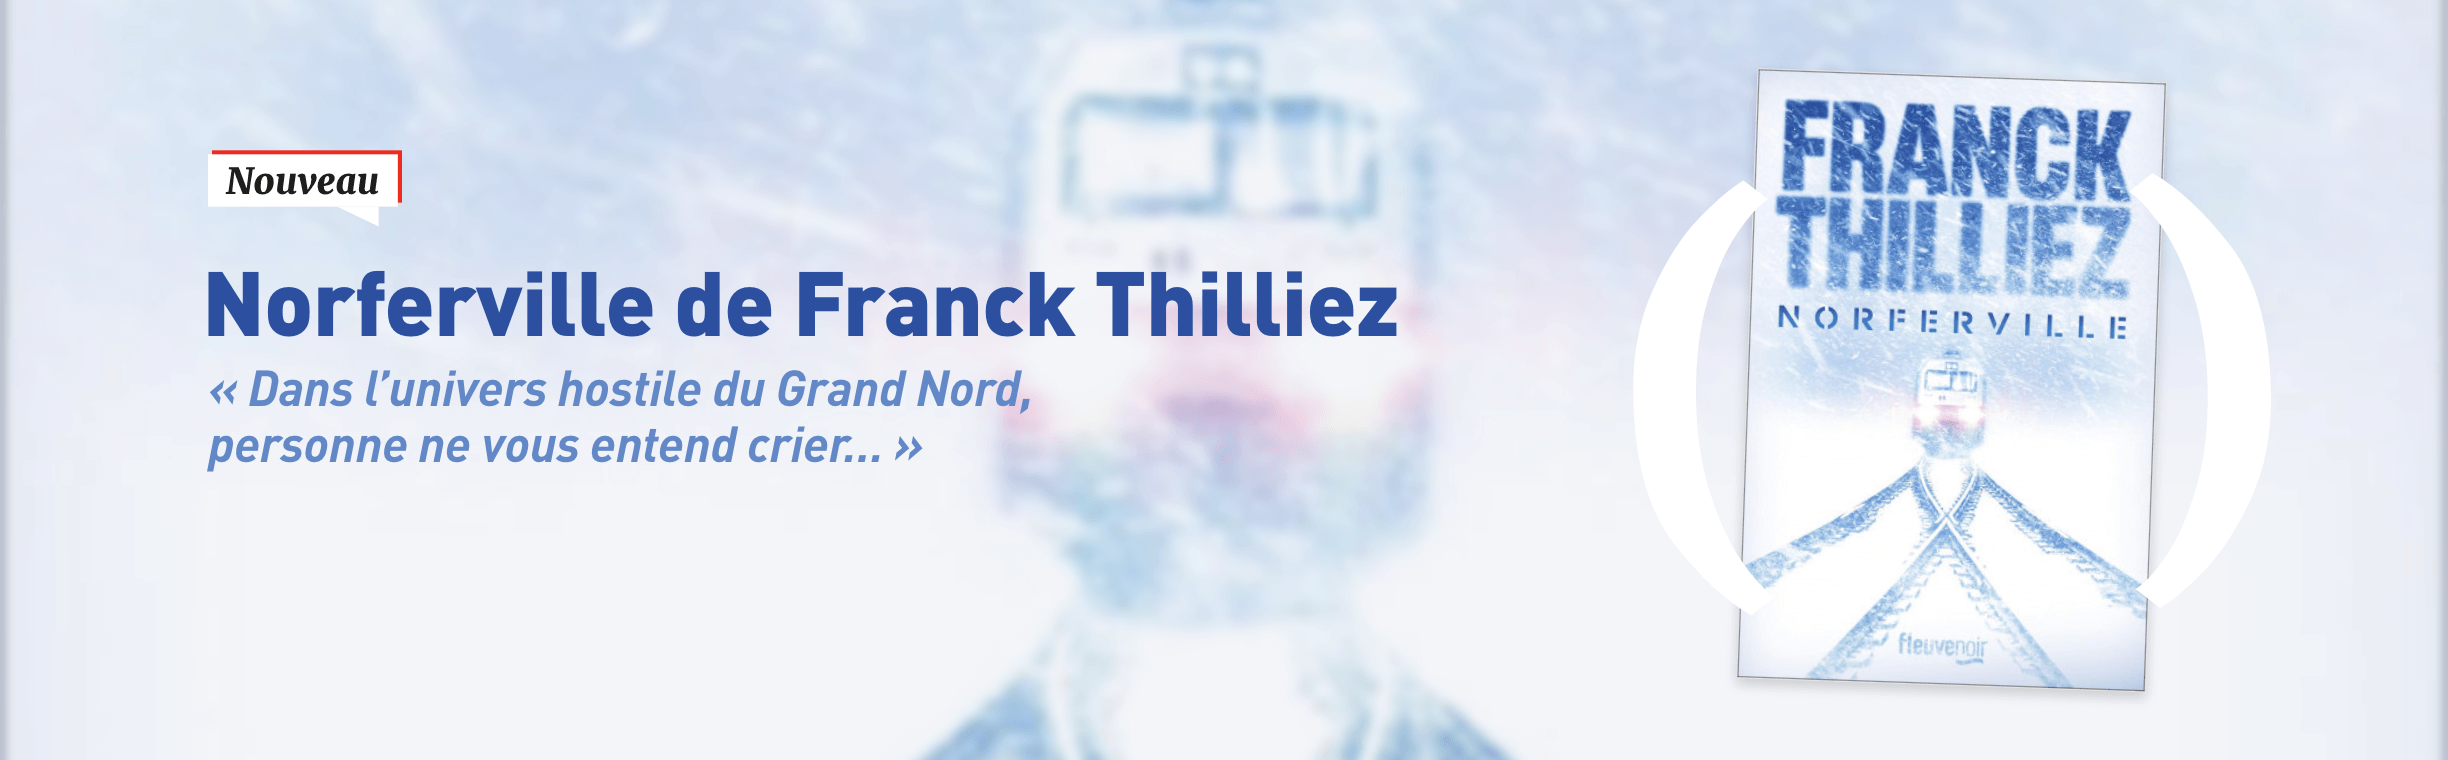 Nouveauté : Norferville de Franck Thilliez